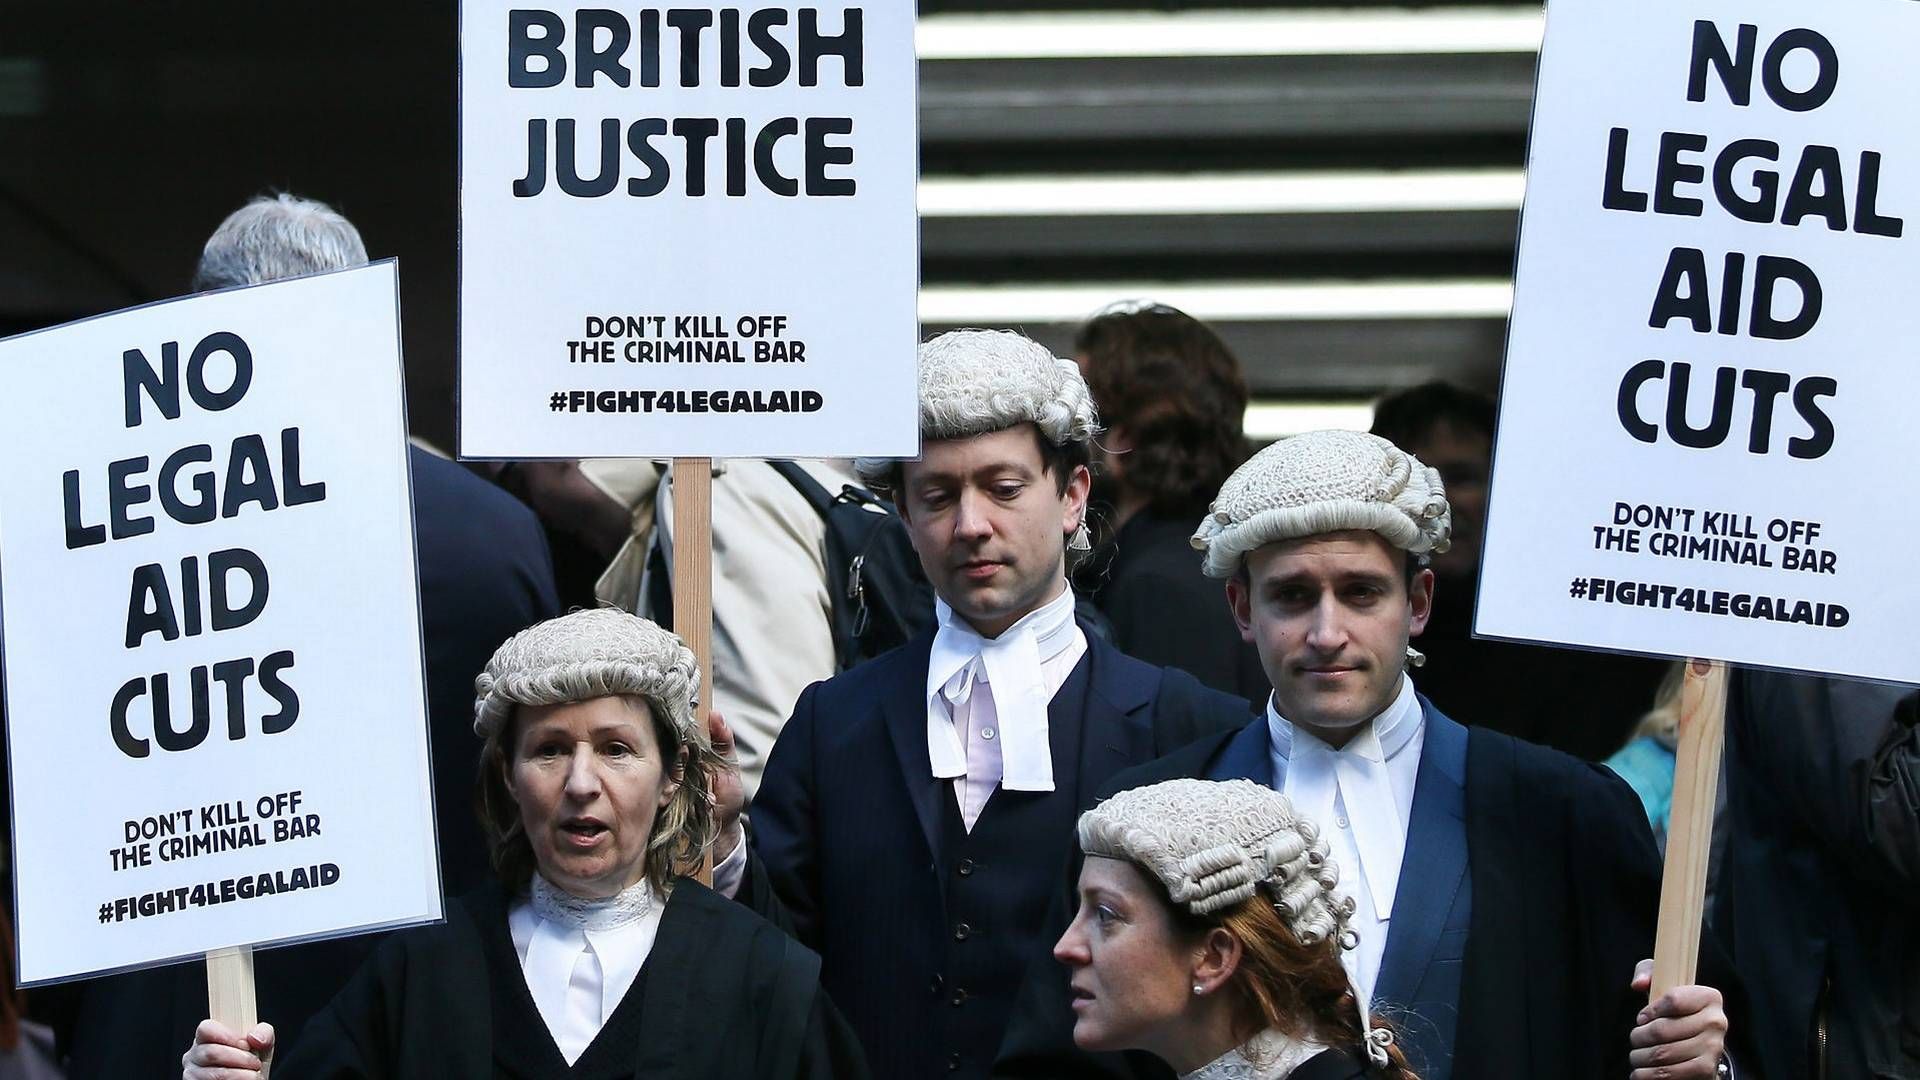 Britiske advokater planlægger strejke og aktionsdage over strid om retshjælpsalærer. | Foto: Alastair Grant/AP/Ritzau Scanpix